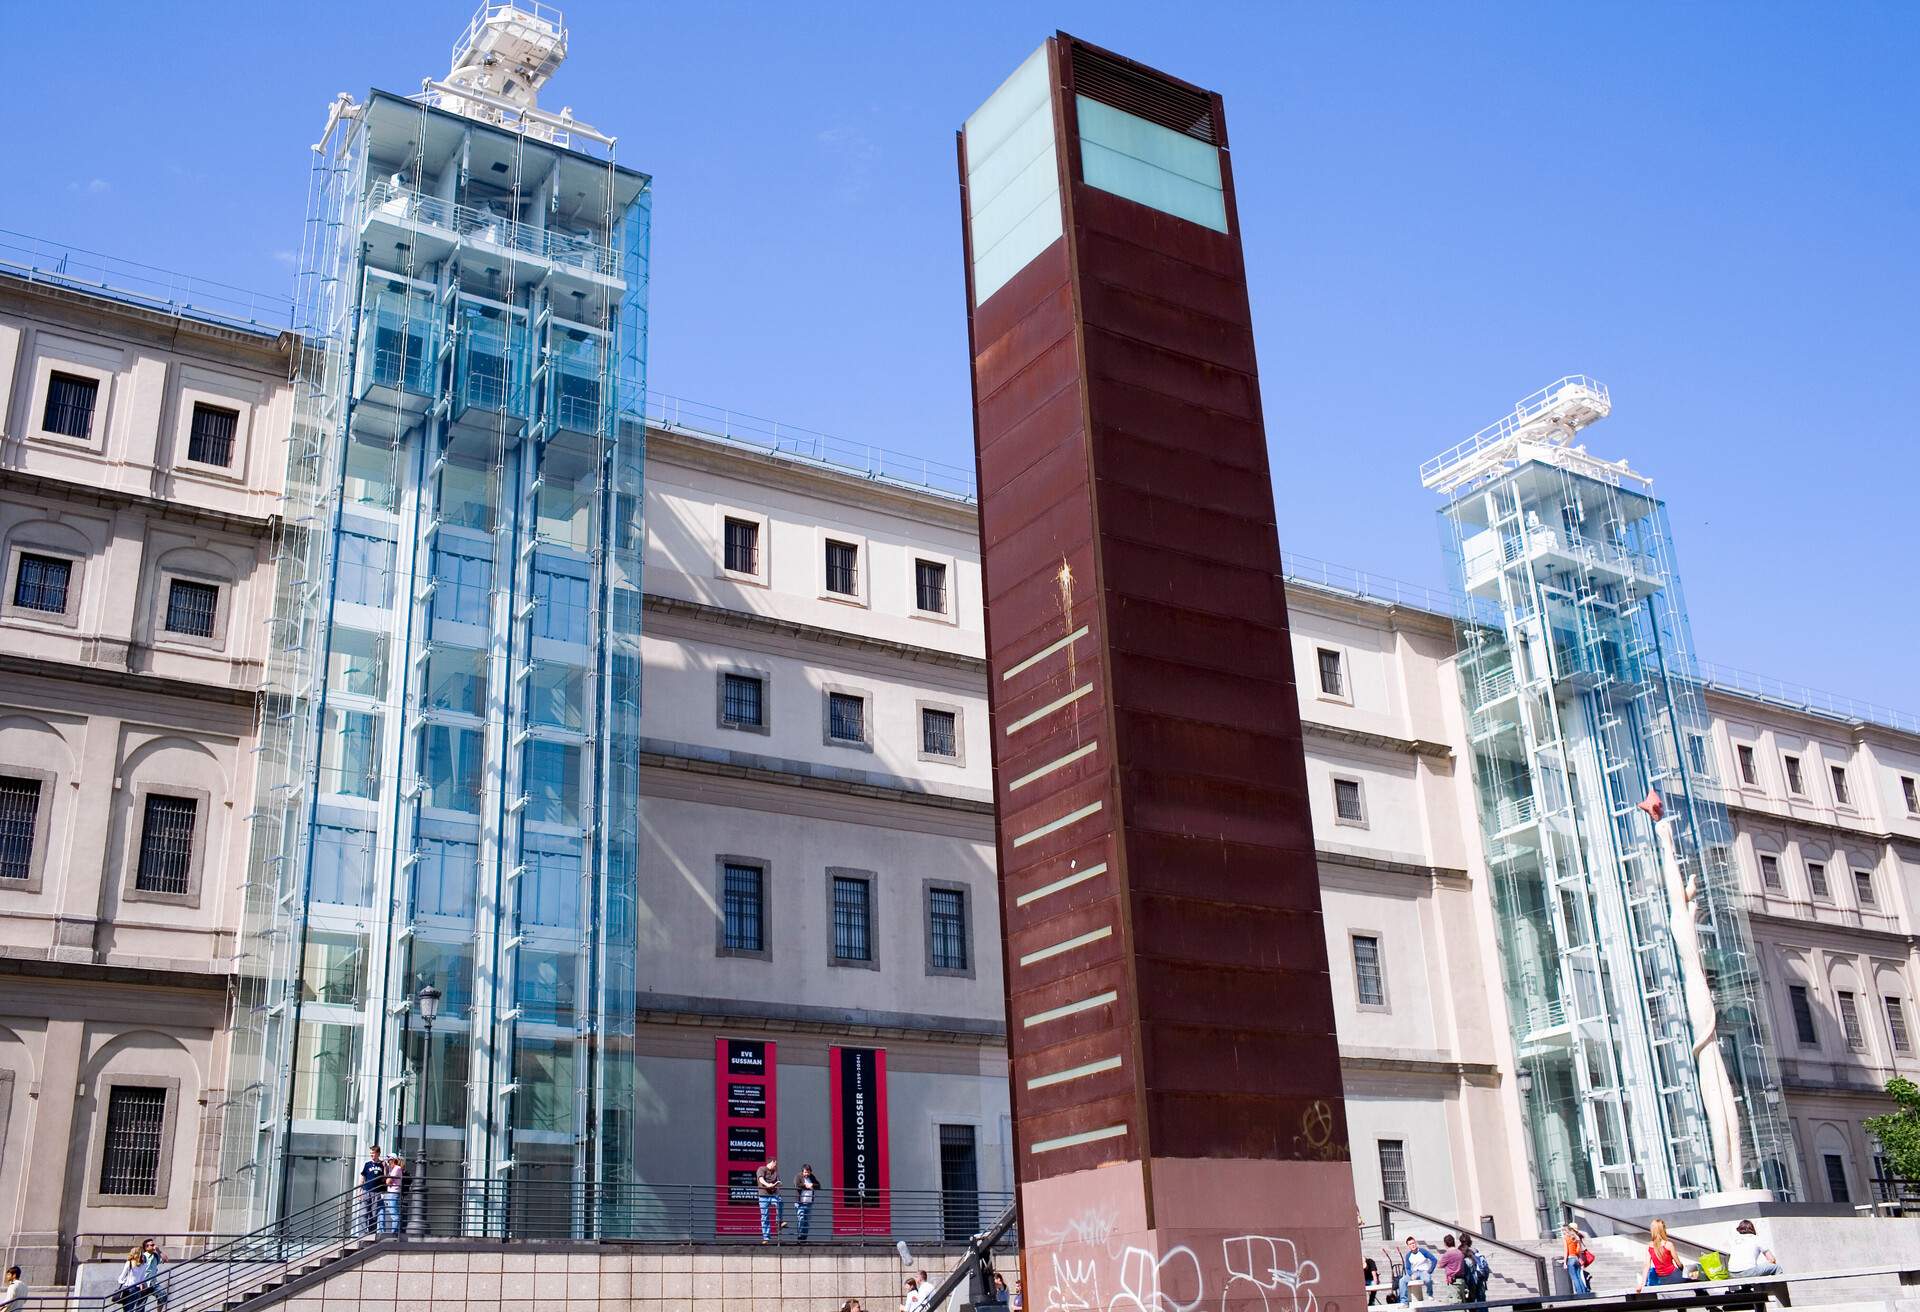 DEST_SPAIN_MADRID_Museo Nacional Centro de Arte Reina Sofia_GettyImages-79193923